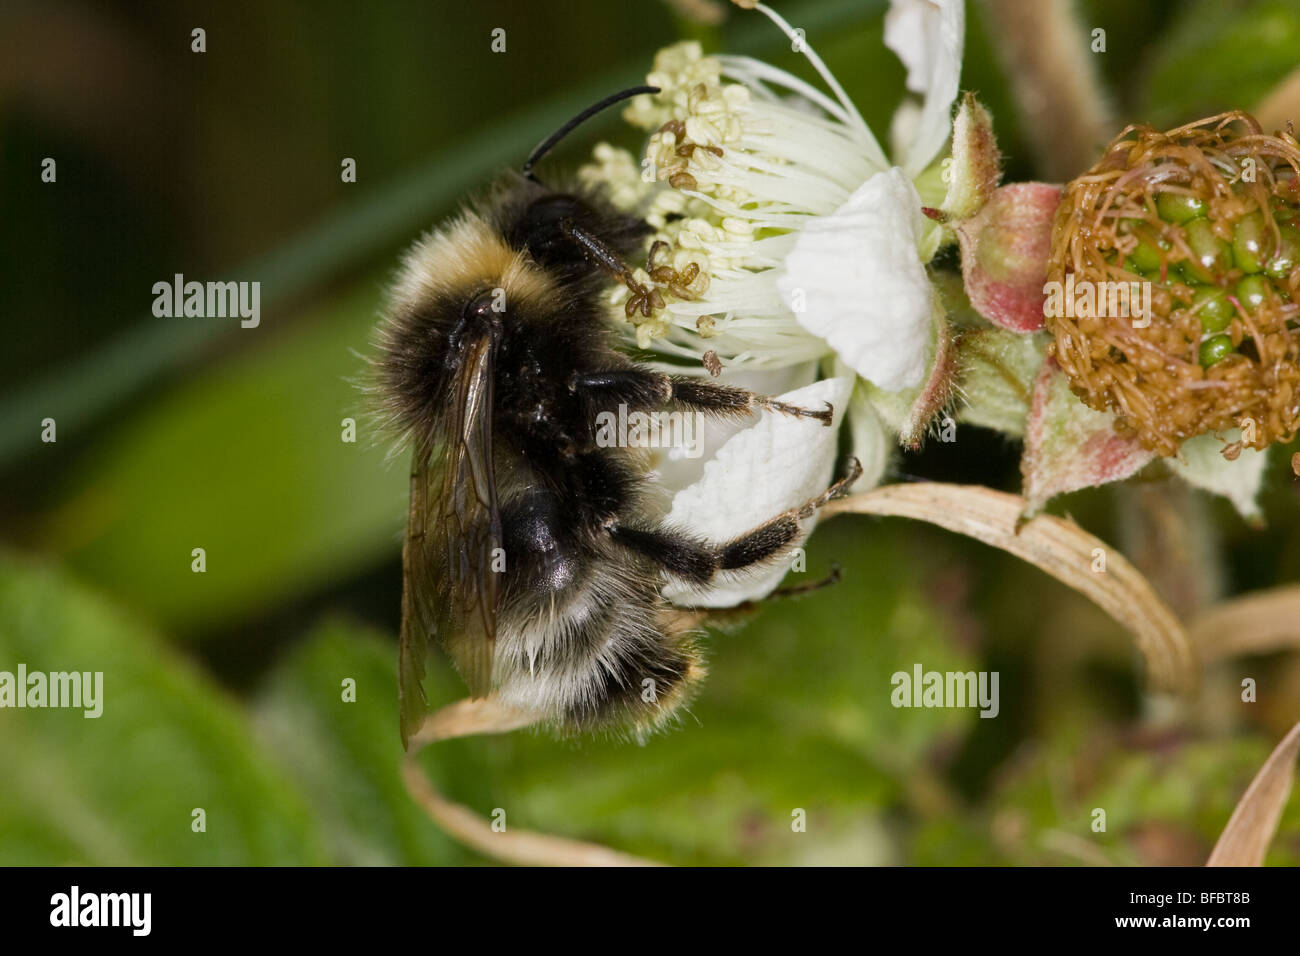 Coucou de forêt, Bumblebee Bombus sylvestris, sur Bramble flower Banque D'Images